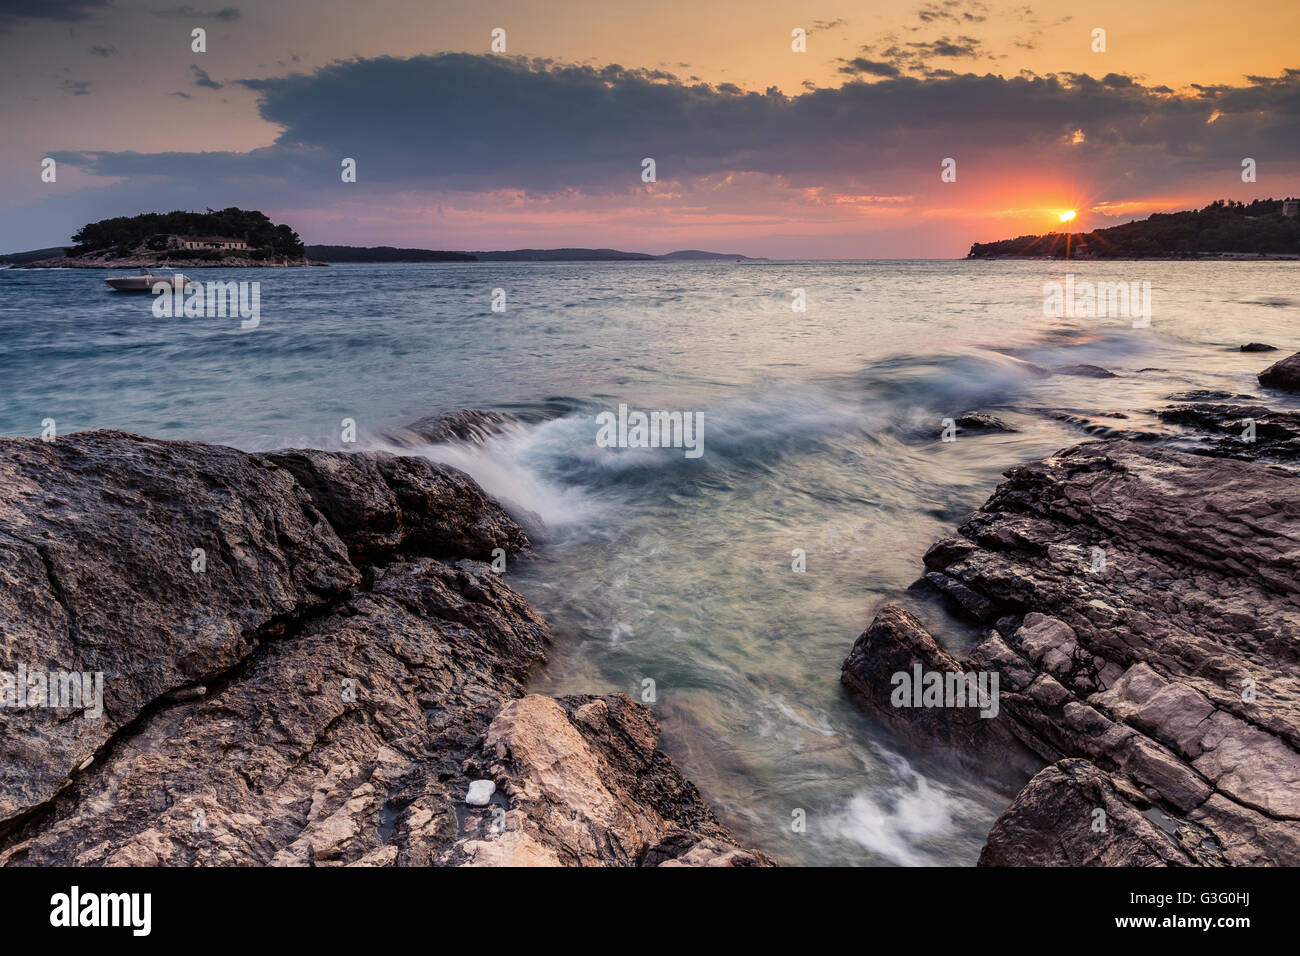 Tramonto sulla costa di Hvar, onde marine, costa rocciosa. Isola di Hvar. Mare Adriatico, Croazia. Europa. Foto Stock